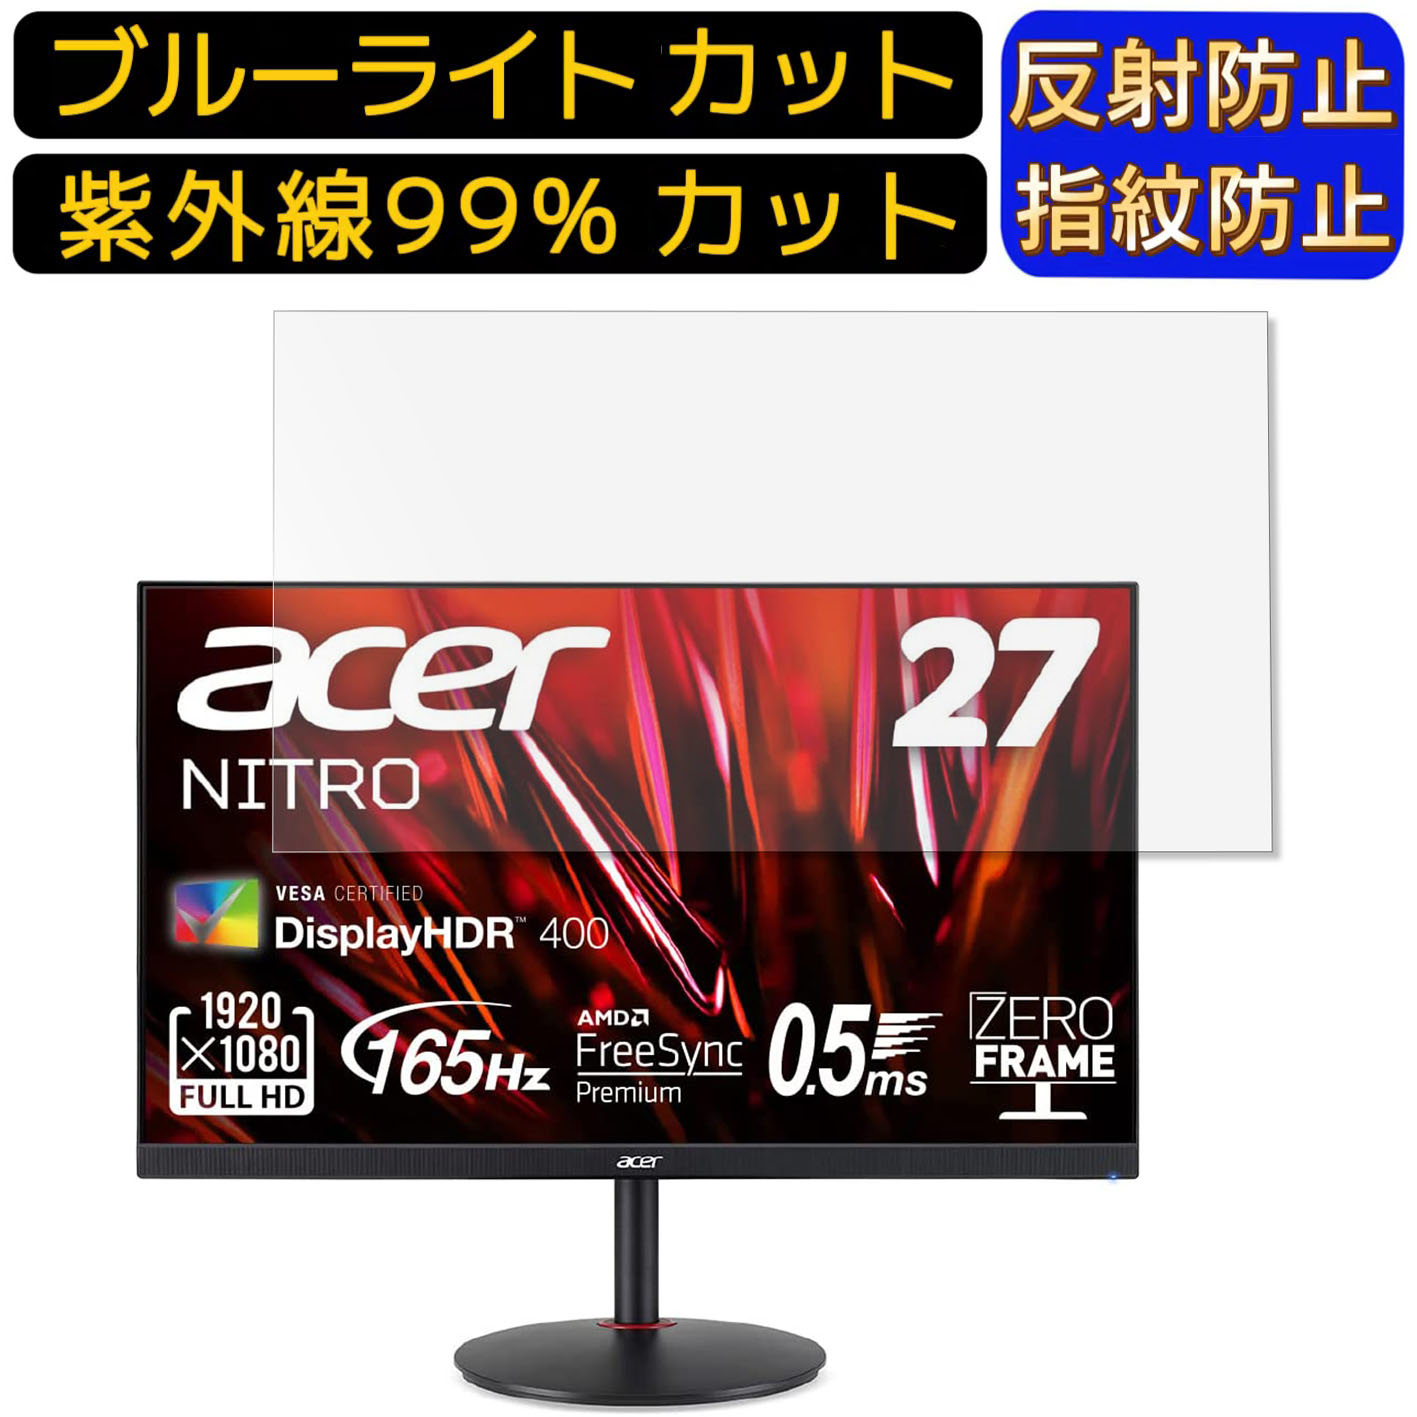 【ポイント2倍】Acer XV272LVbmiiprx (XV2) 